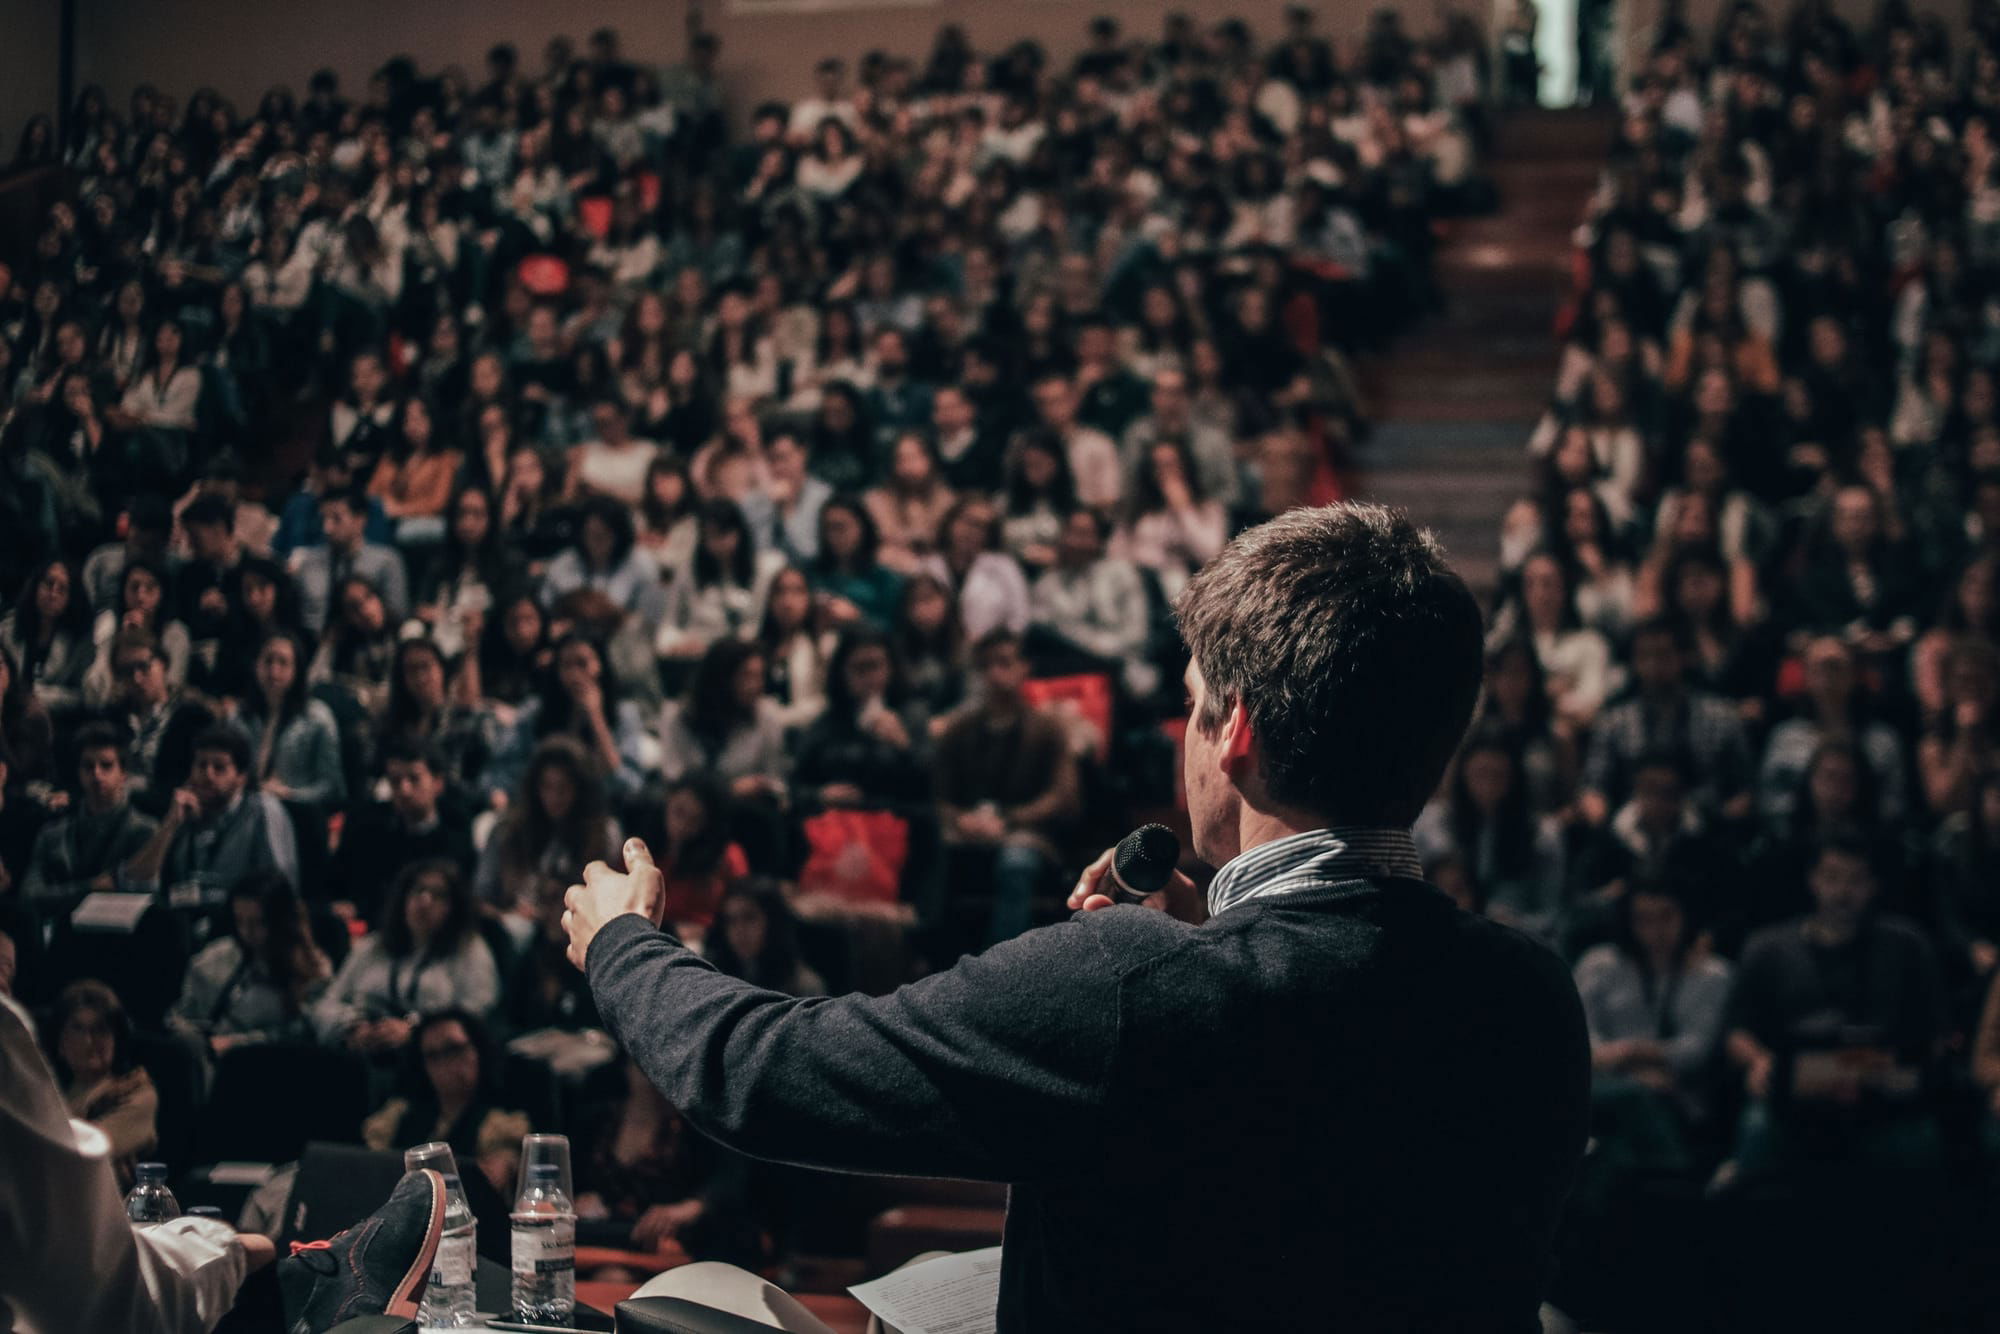 דיבור בפני קהל- היכולת החשובה ביותר להצלחה עסקית